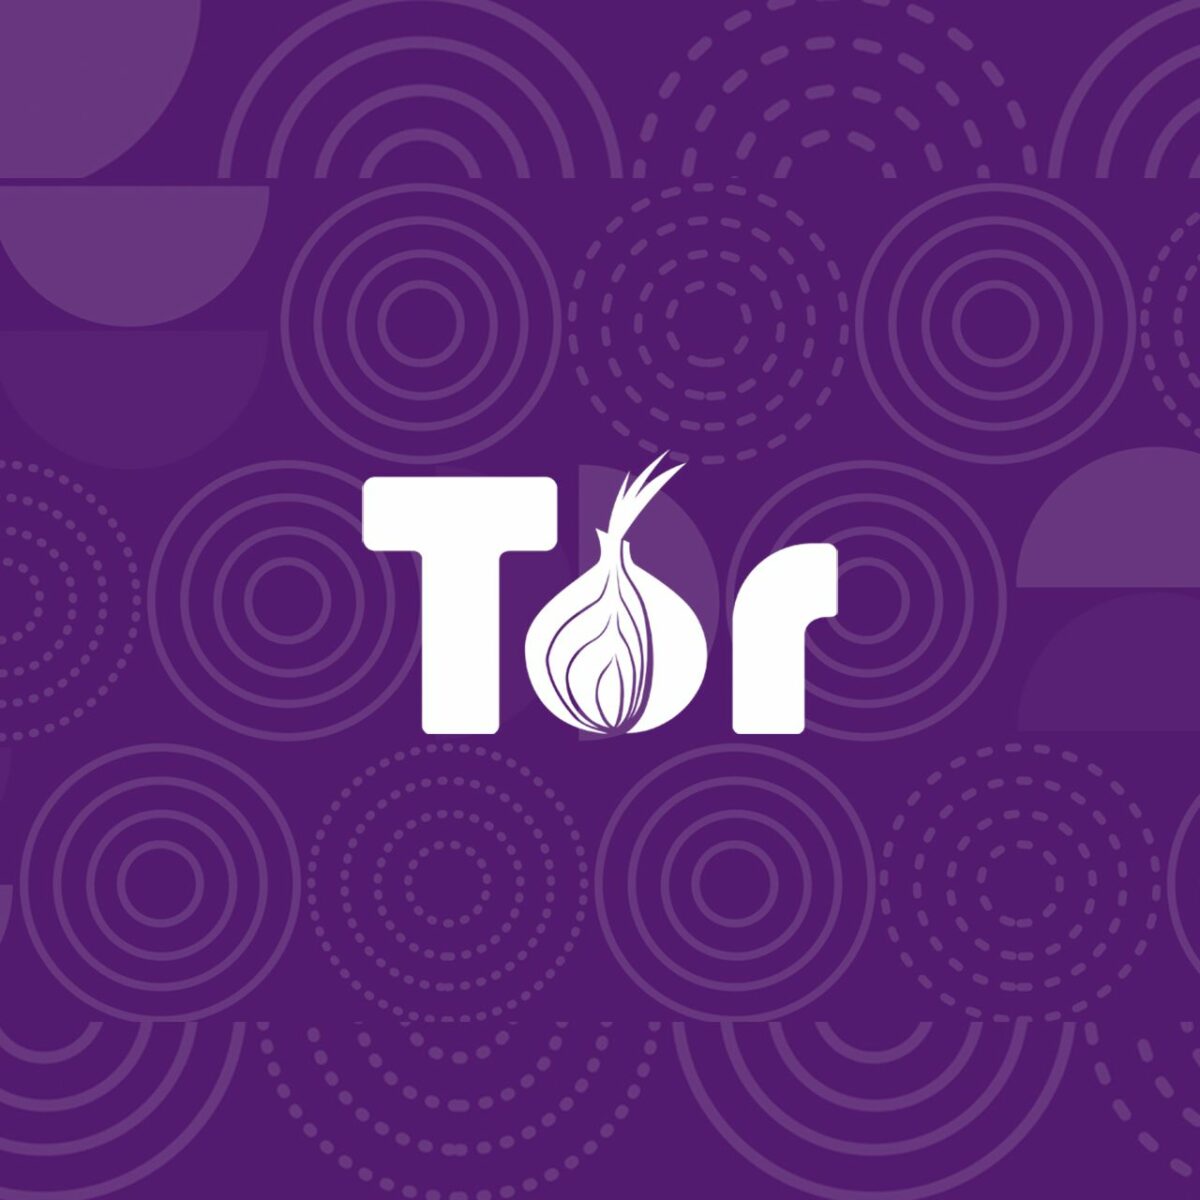 Tor browser no video mega тор браузер рампа mega